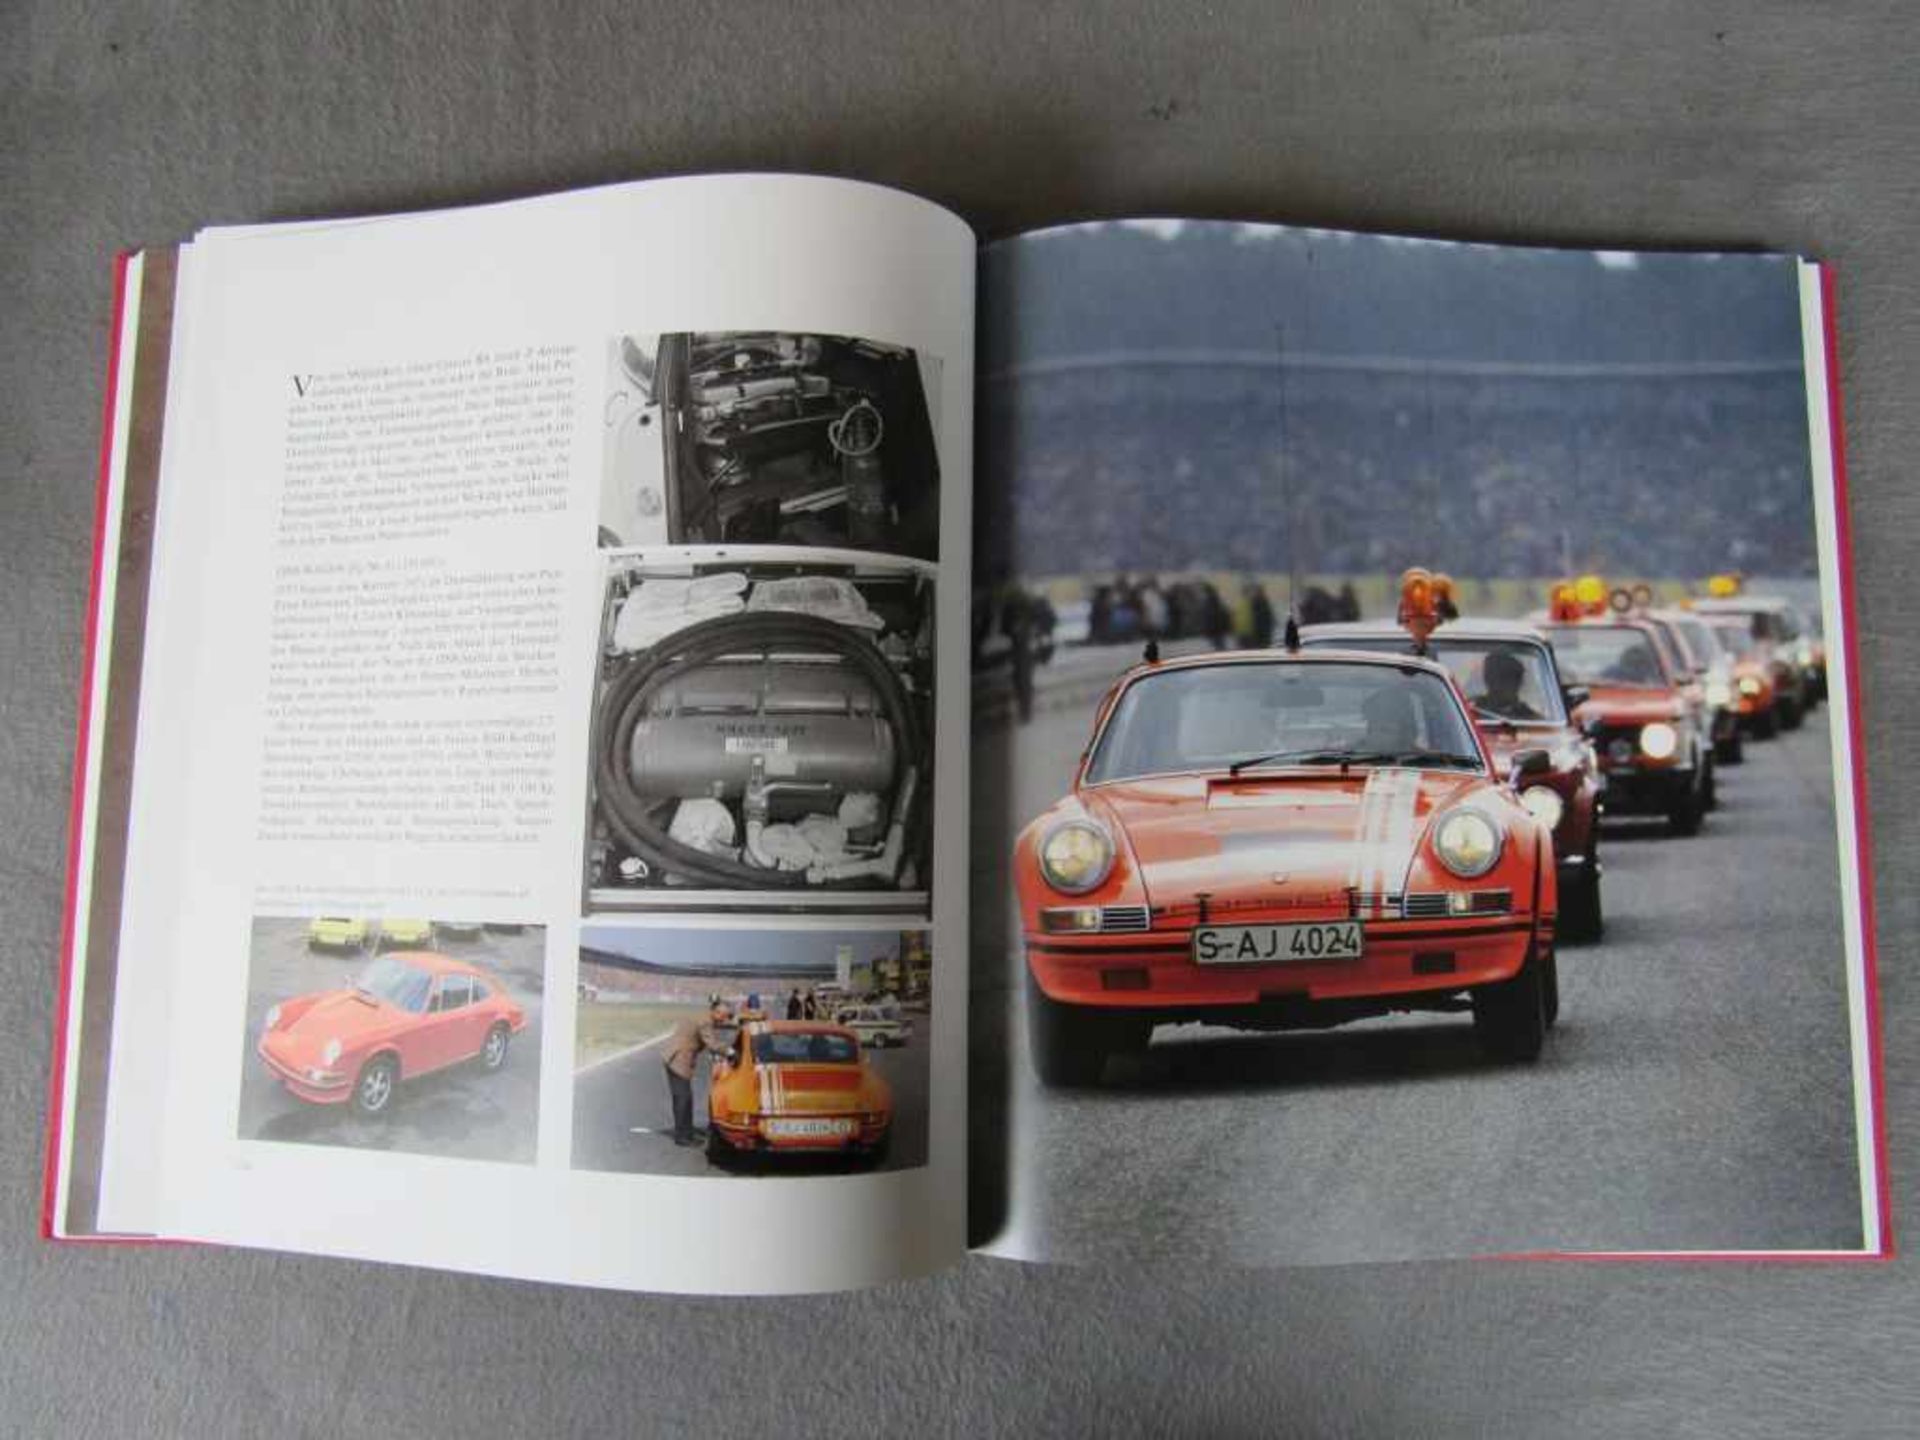 Sehr seltenes Porsche Carrera RS Buch limitierte Auflage nummeriert Dr. Thomas Gruber und Dr. Georg, - Image 6 of 8